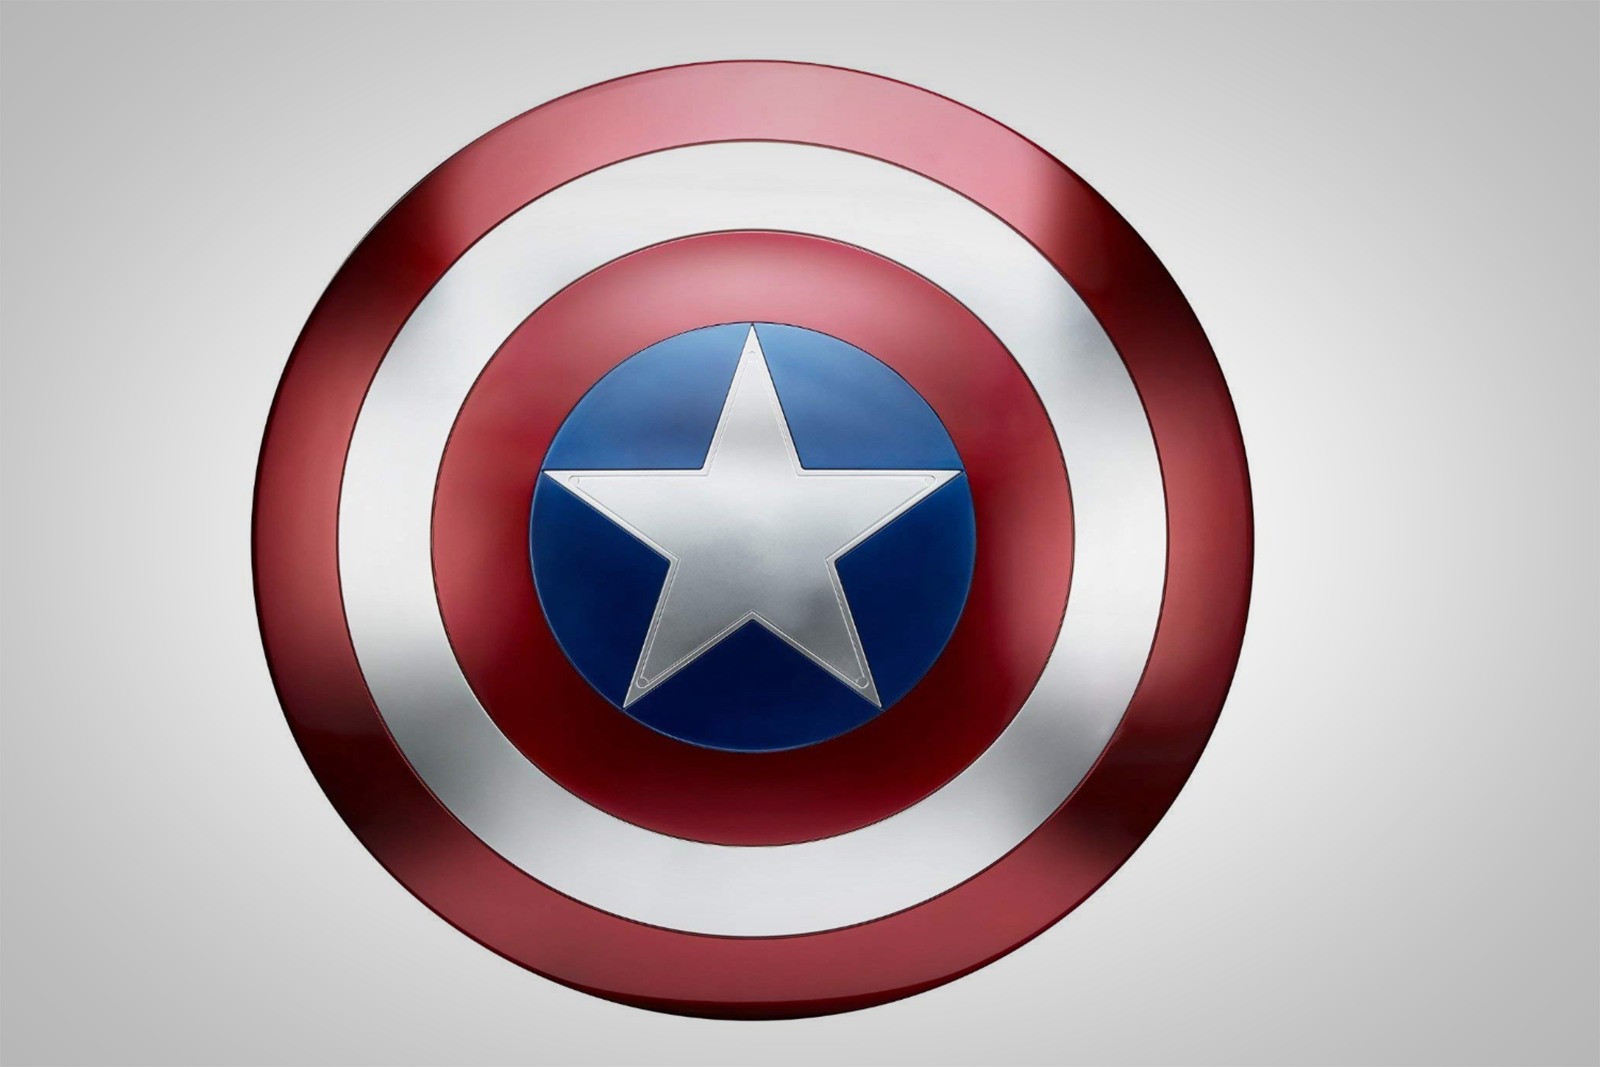 Juguetes y Regalos para los Fans de Avengers: Infinity War • Mama Latina  Tips